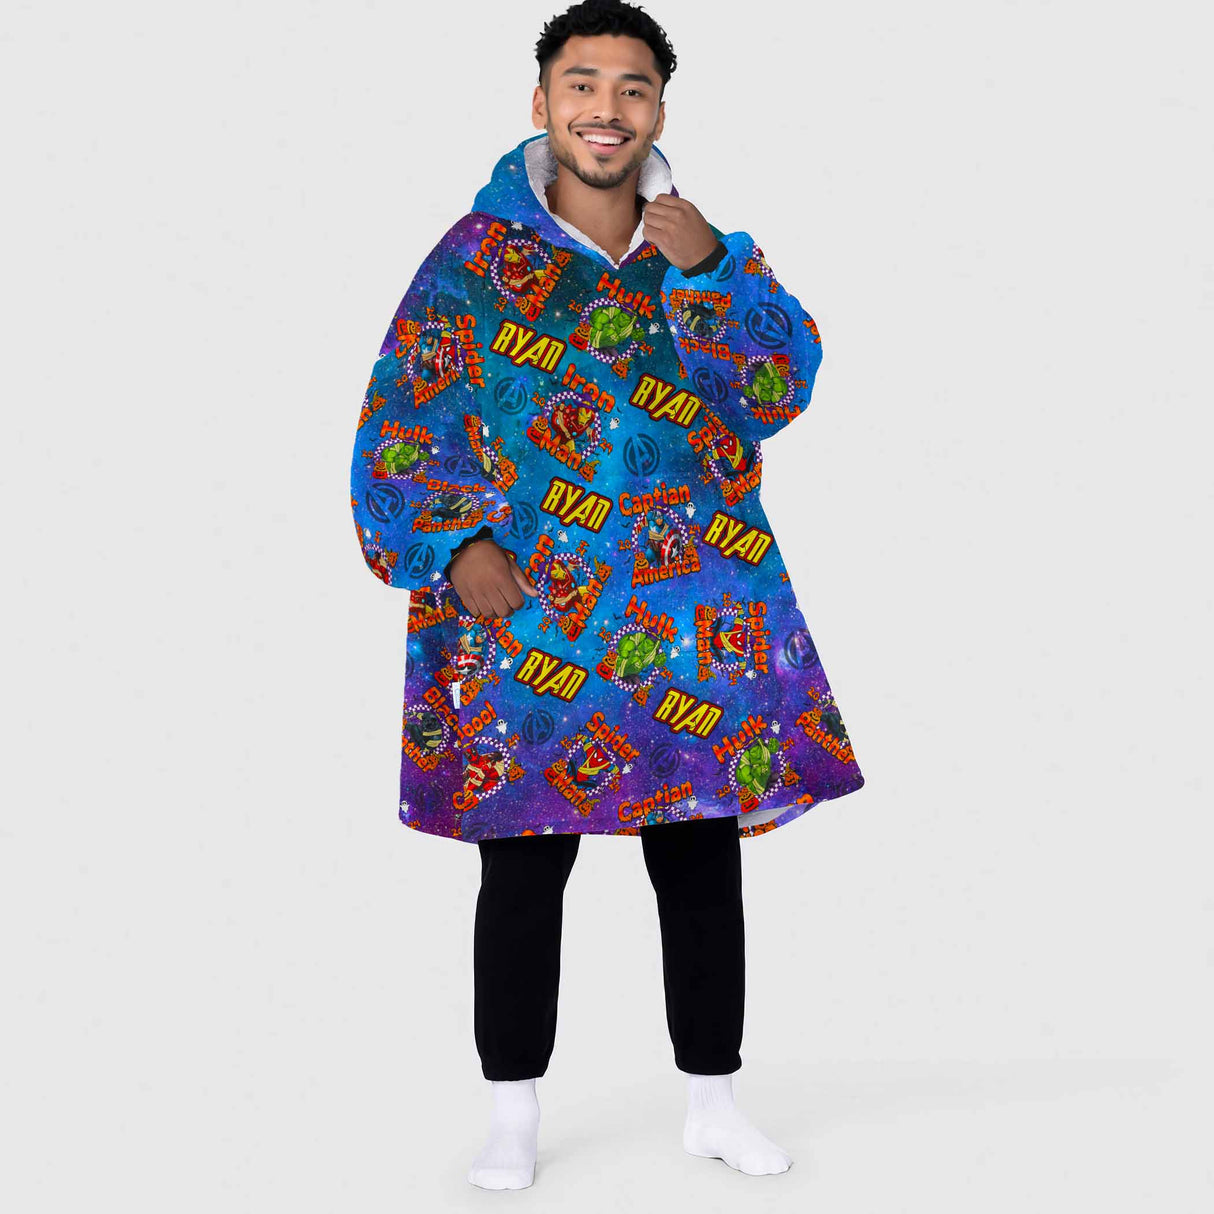 Personalized Snug Oversized Sherpa Wearable Superheroes Halloween Hoodie Blanket